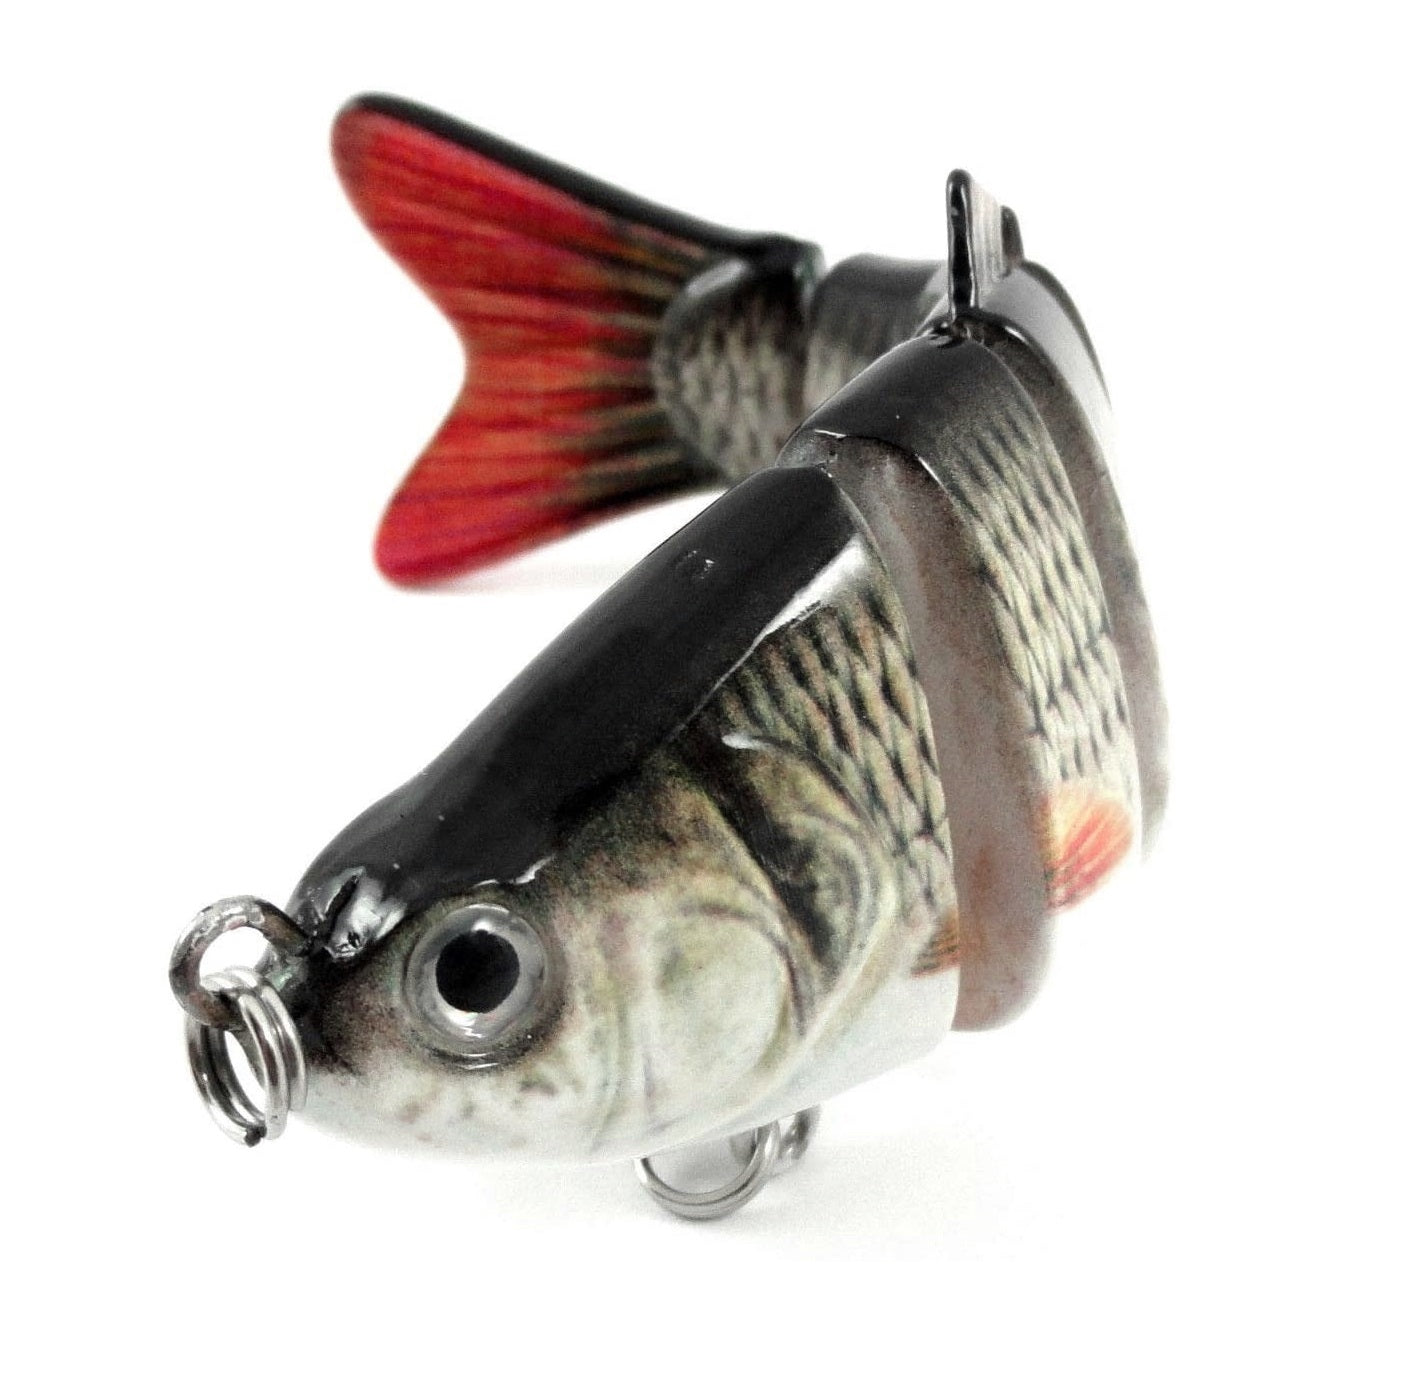 Hard Swimbait Realistic Jointed Fishing Lure - Glide Bait – RealismSwimbaits